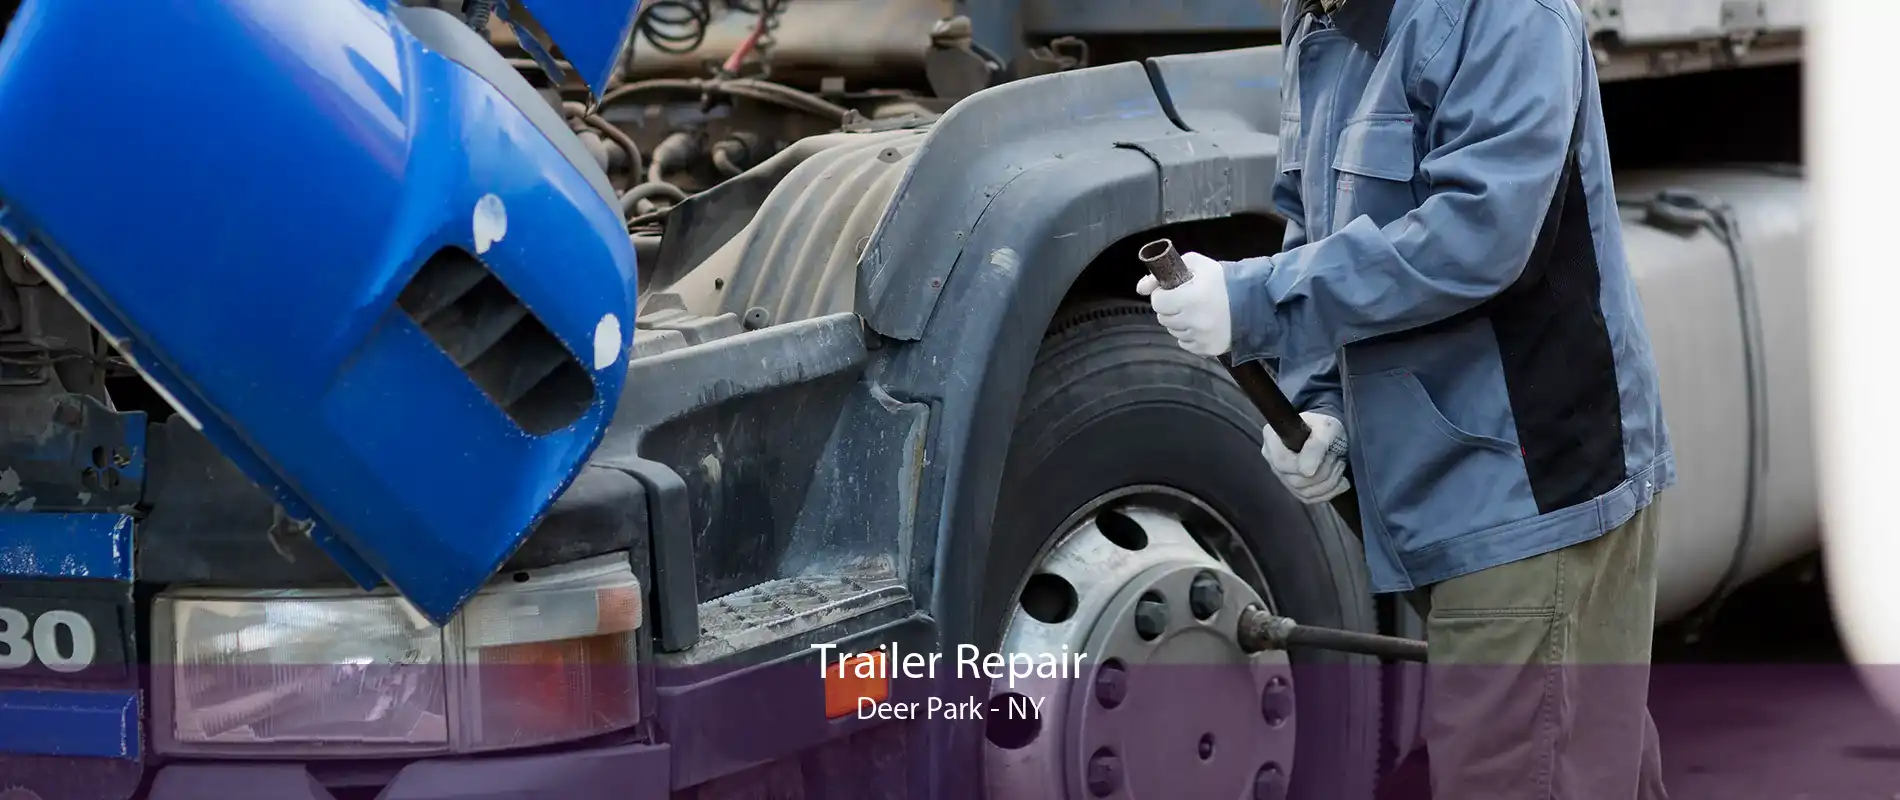 Trailer Repair Deer Park - NY